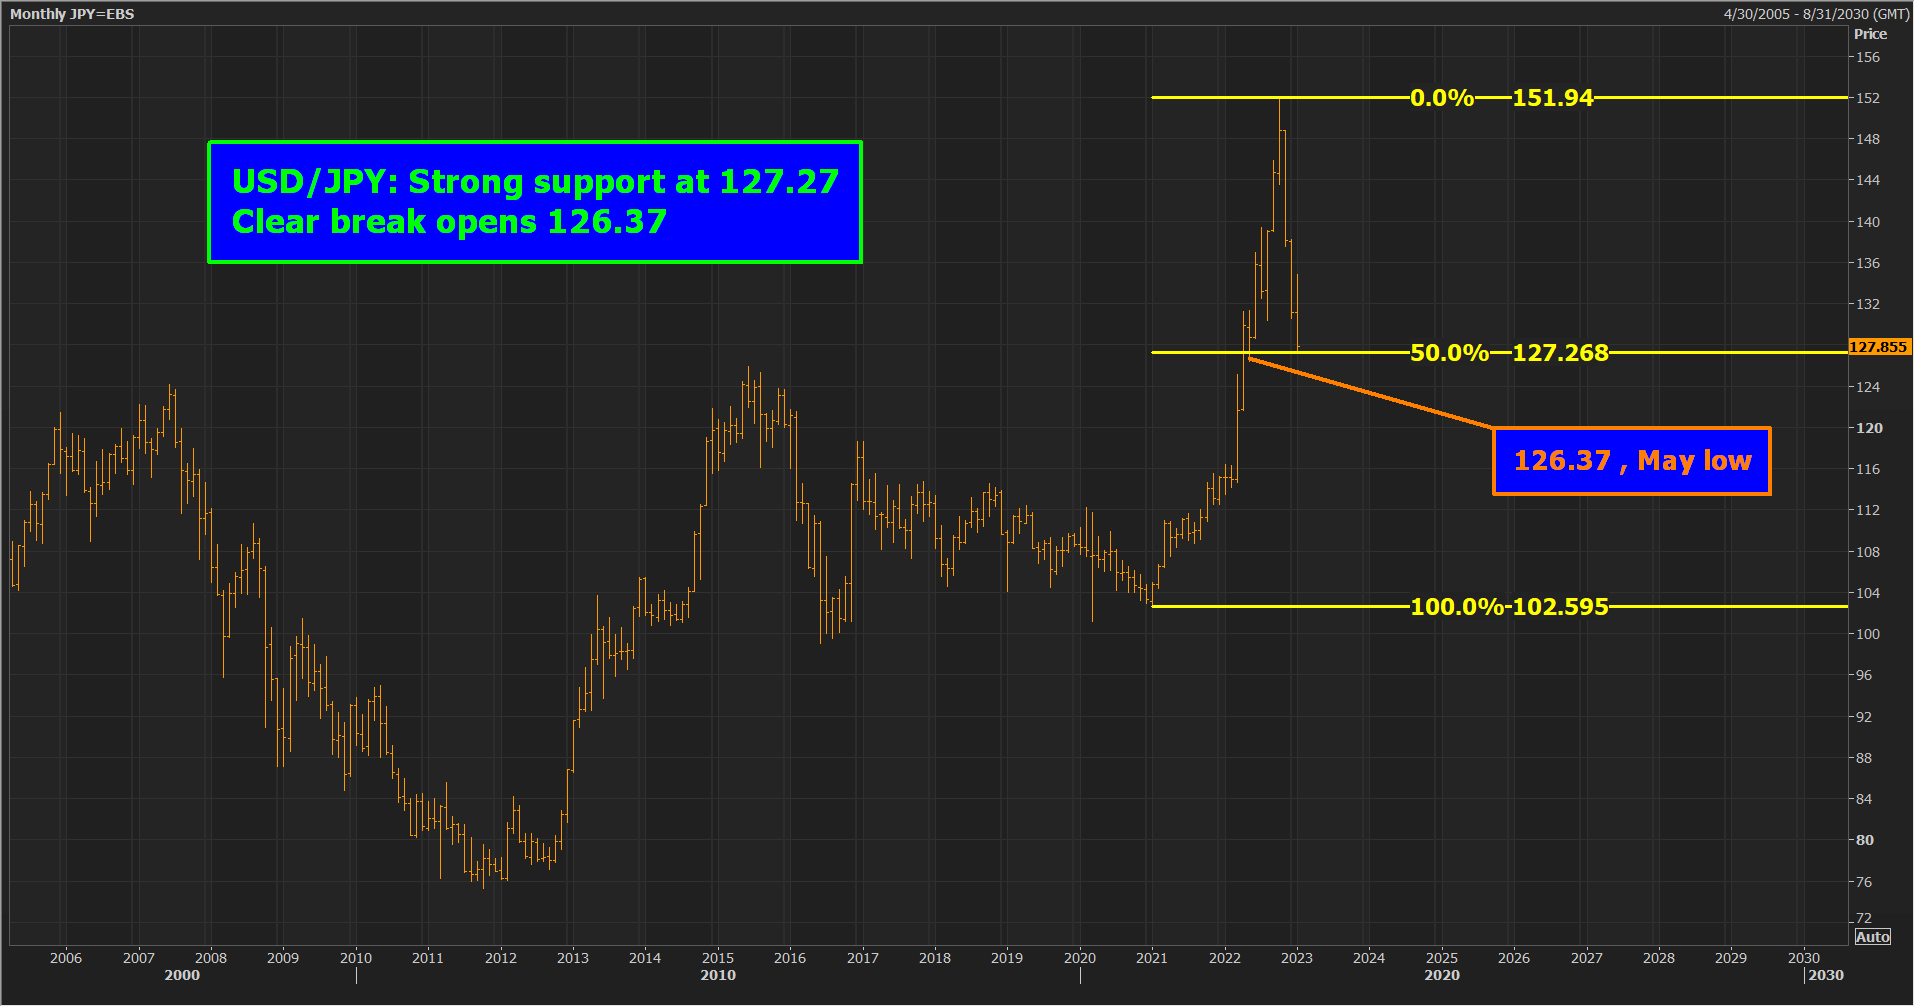 USD/JPY Giảm trong tầm kiểm soát khi kỳ vọng của BoJ tăng lên